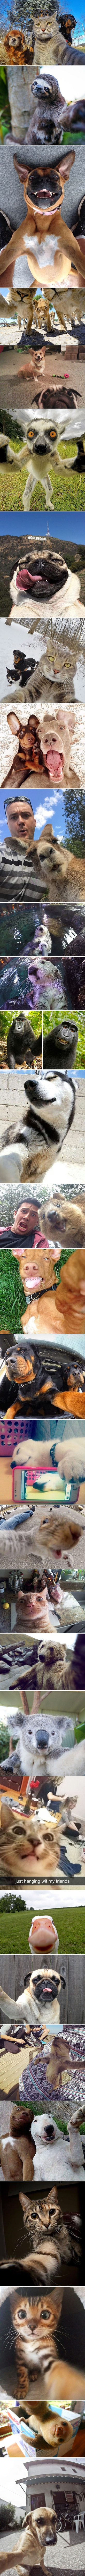 TOP 30 najboljih životinjskih selfija koji će vam uljepšati dan!